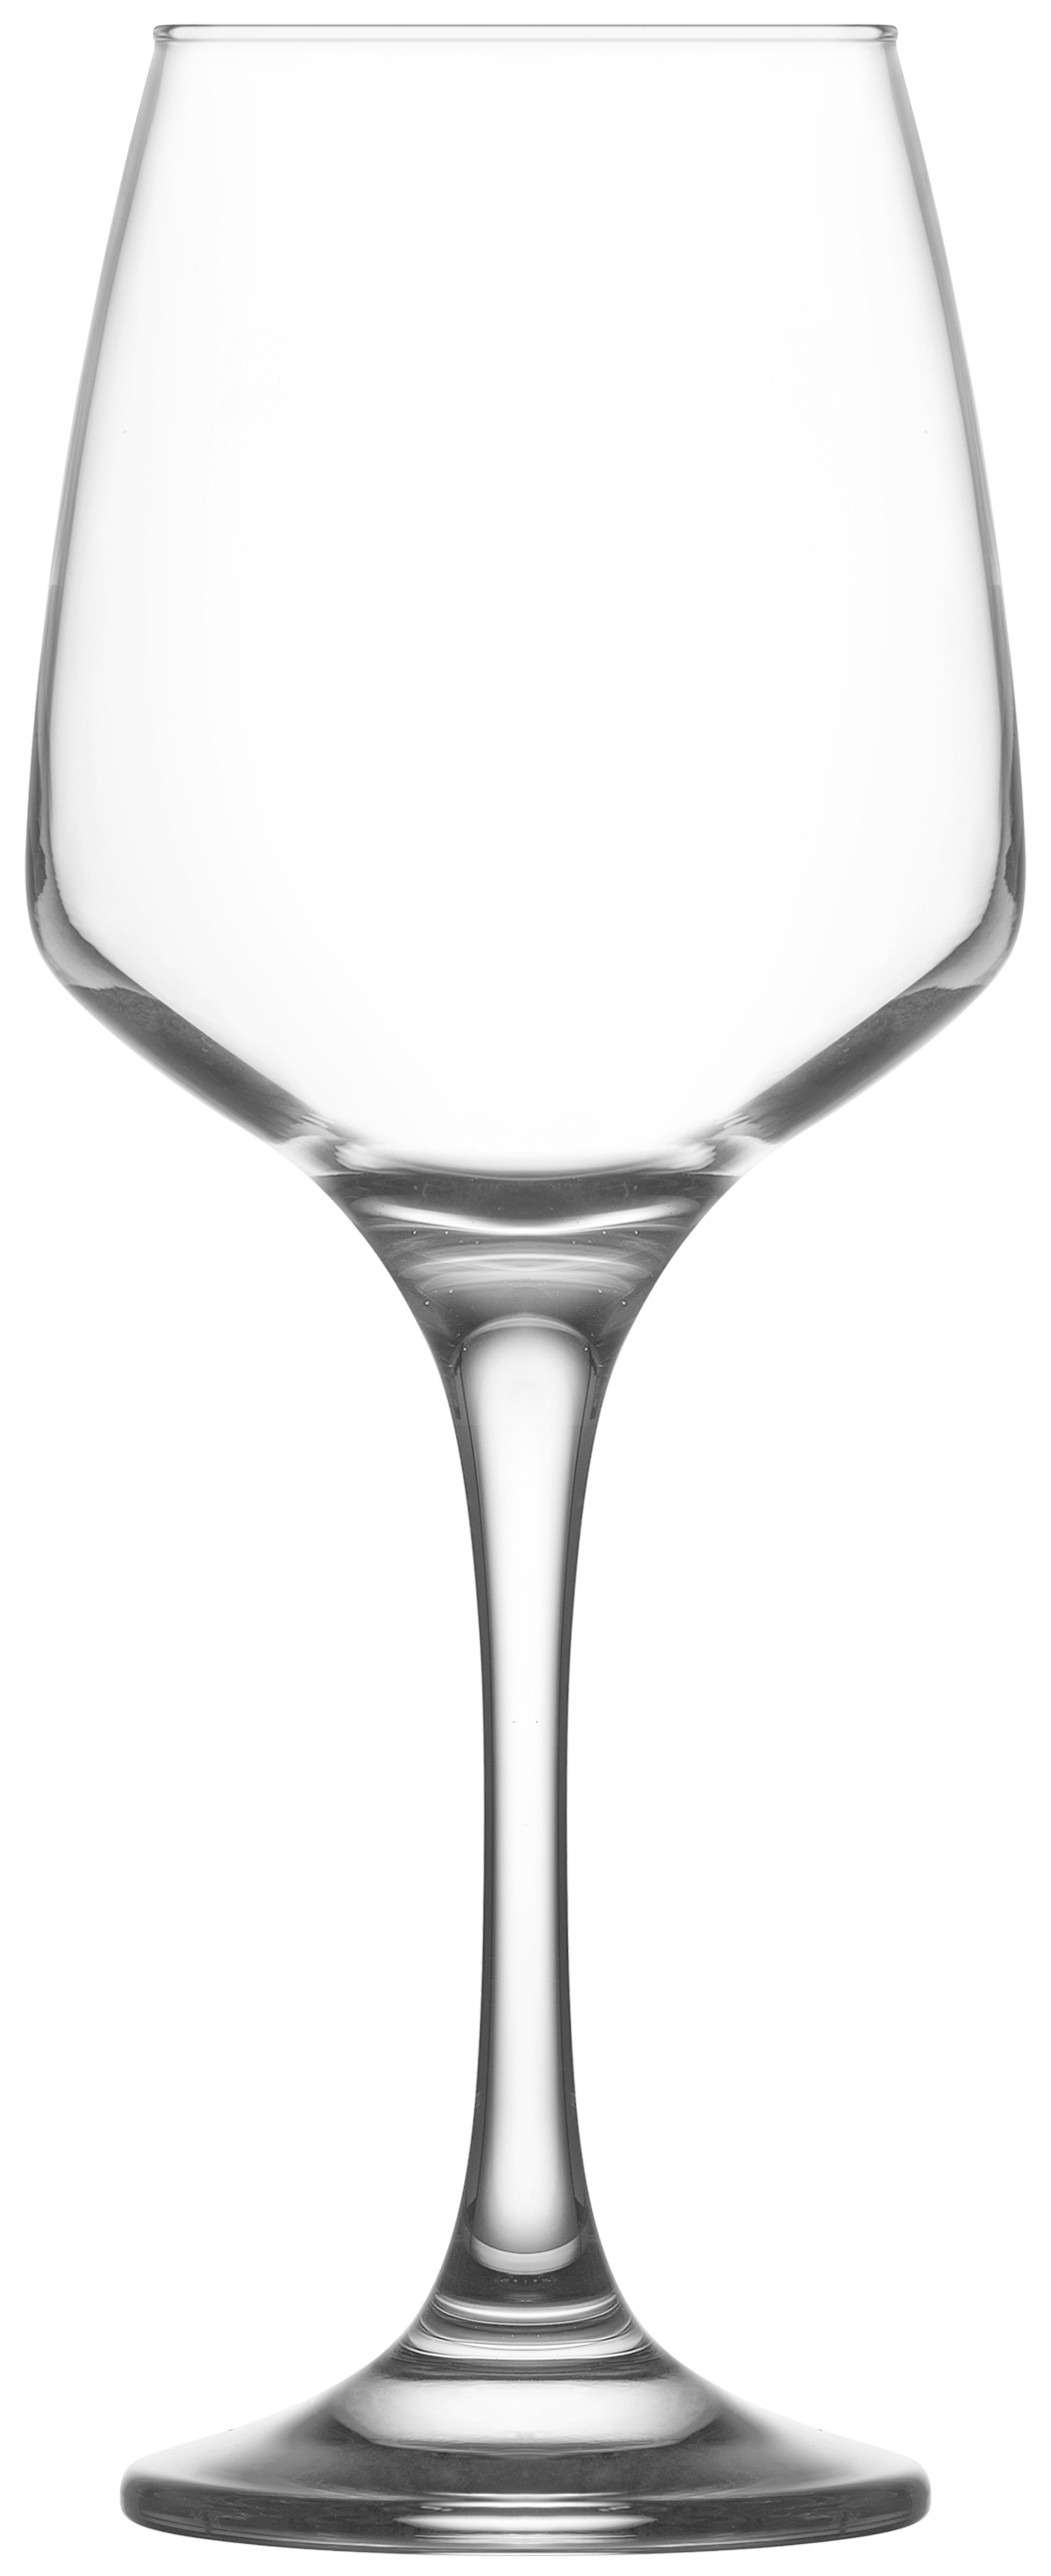 Ποτήρι Κρασιού Σετ 6τμχ Γυάλινο LAV 400ml LVLAL59240F (Υλικό: Γυαλί, Χρώμα: Διάφανο , Μέγεθος: Κολωνάτο) – LAV – LVLAL59240F